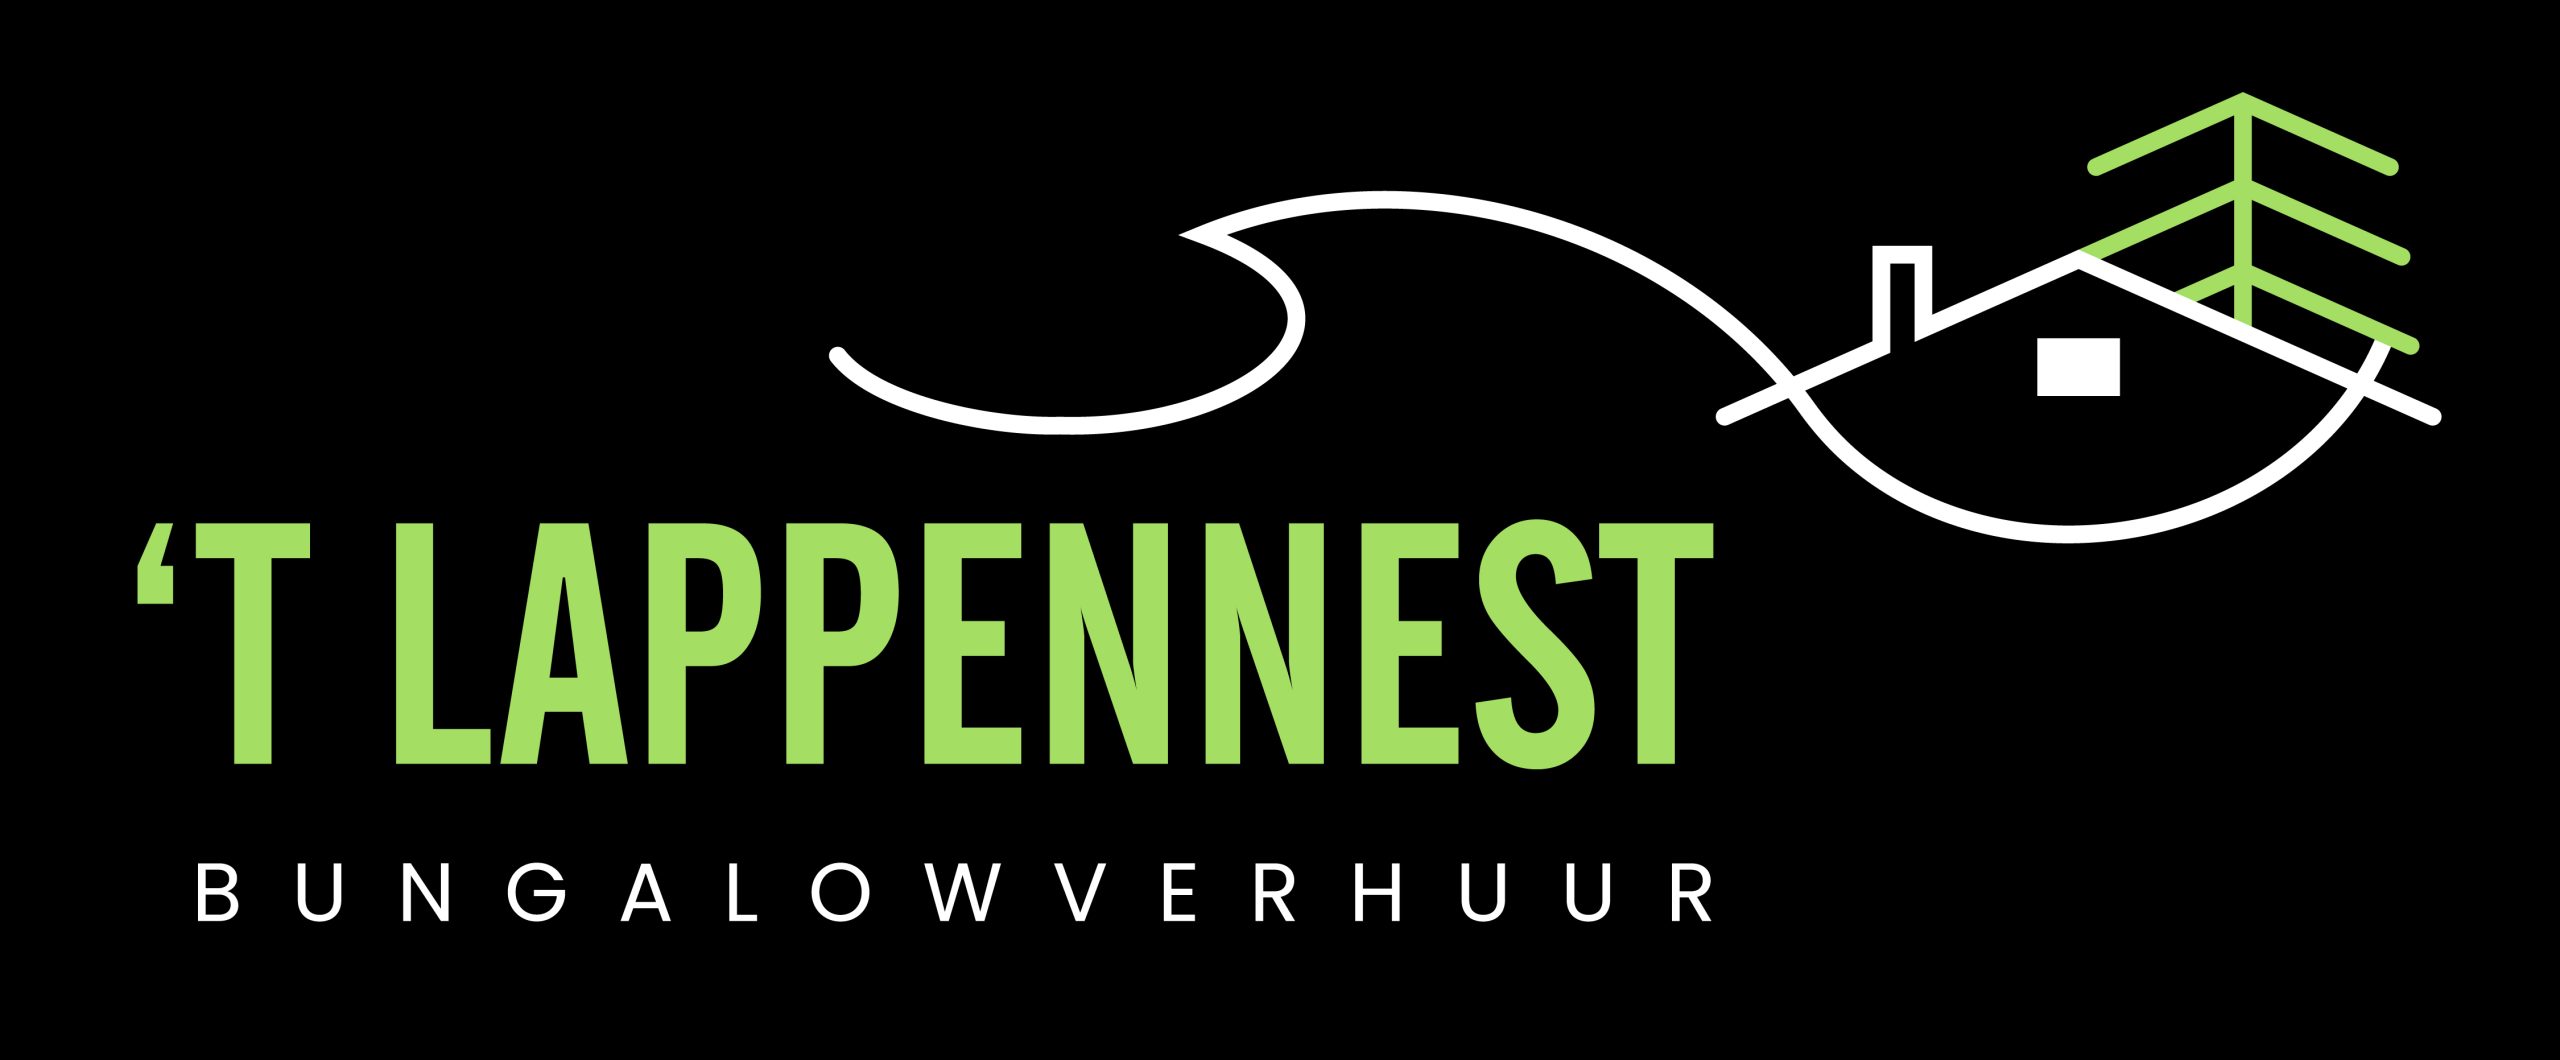 Logo zwart - Lappennest - Bungalow verhuur Noordwijk